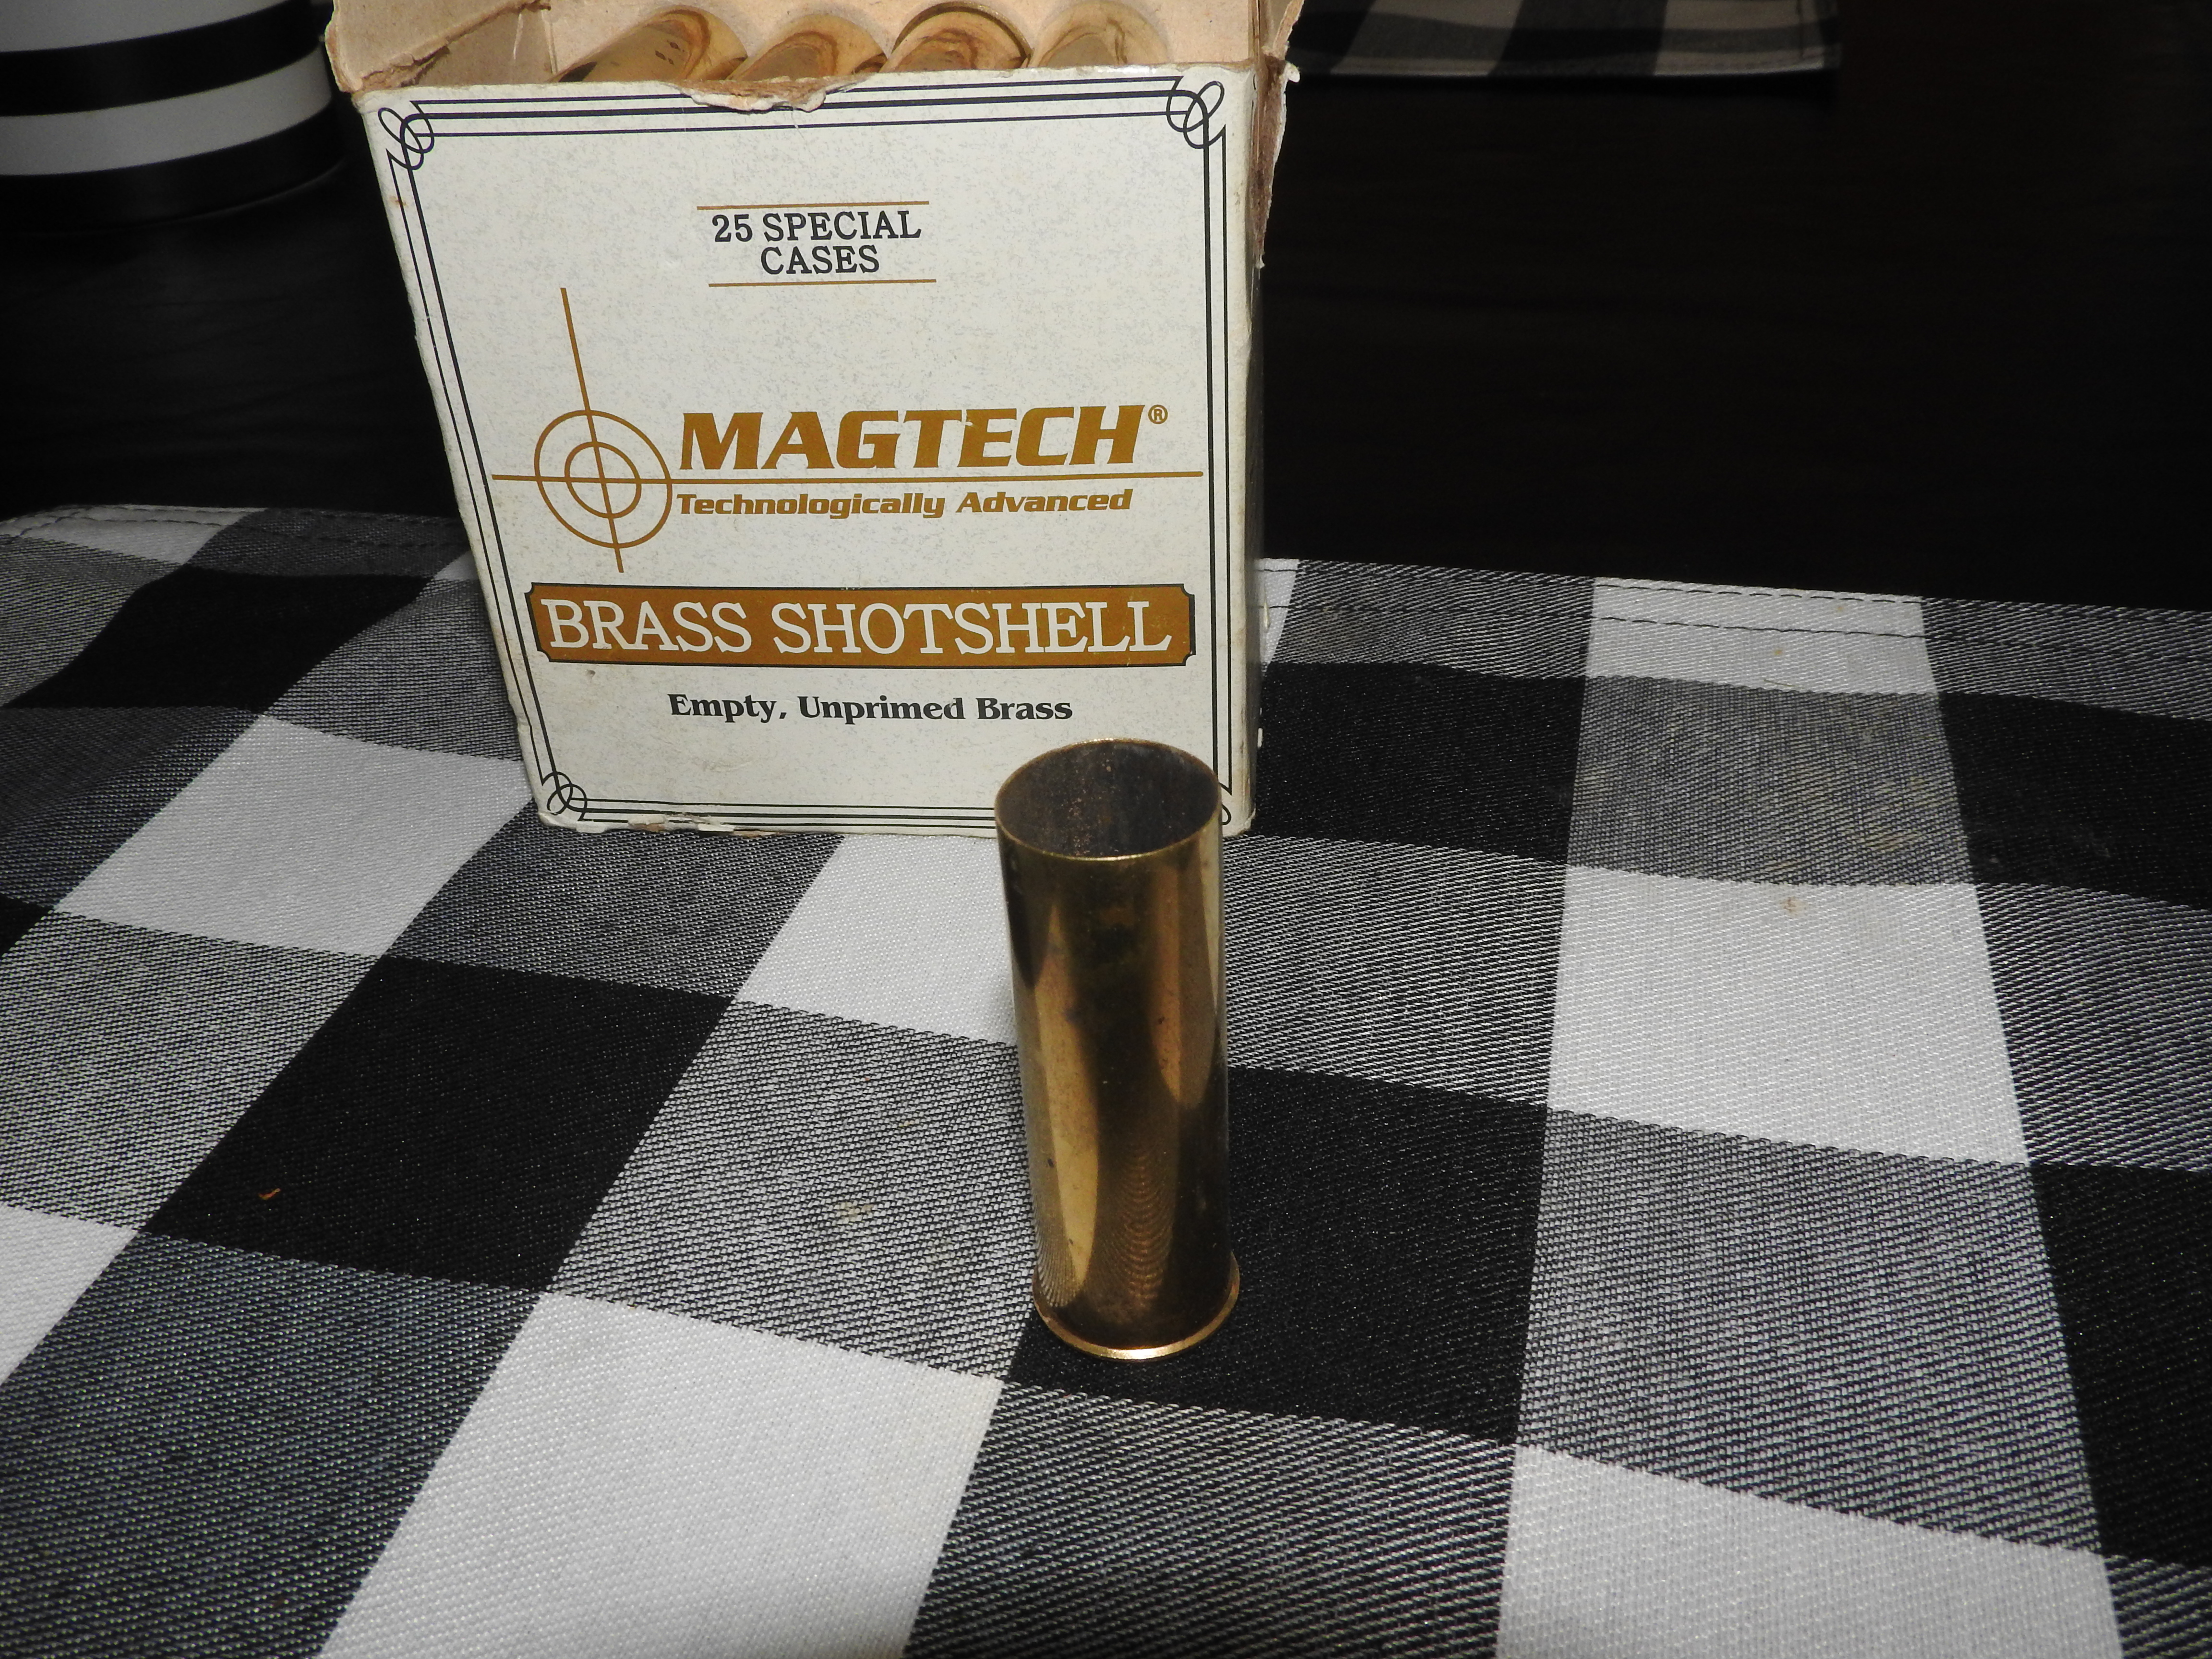 MagTech Brass Shells